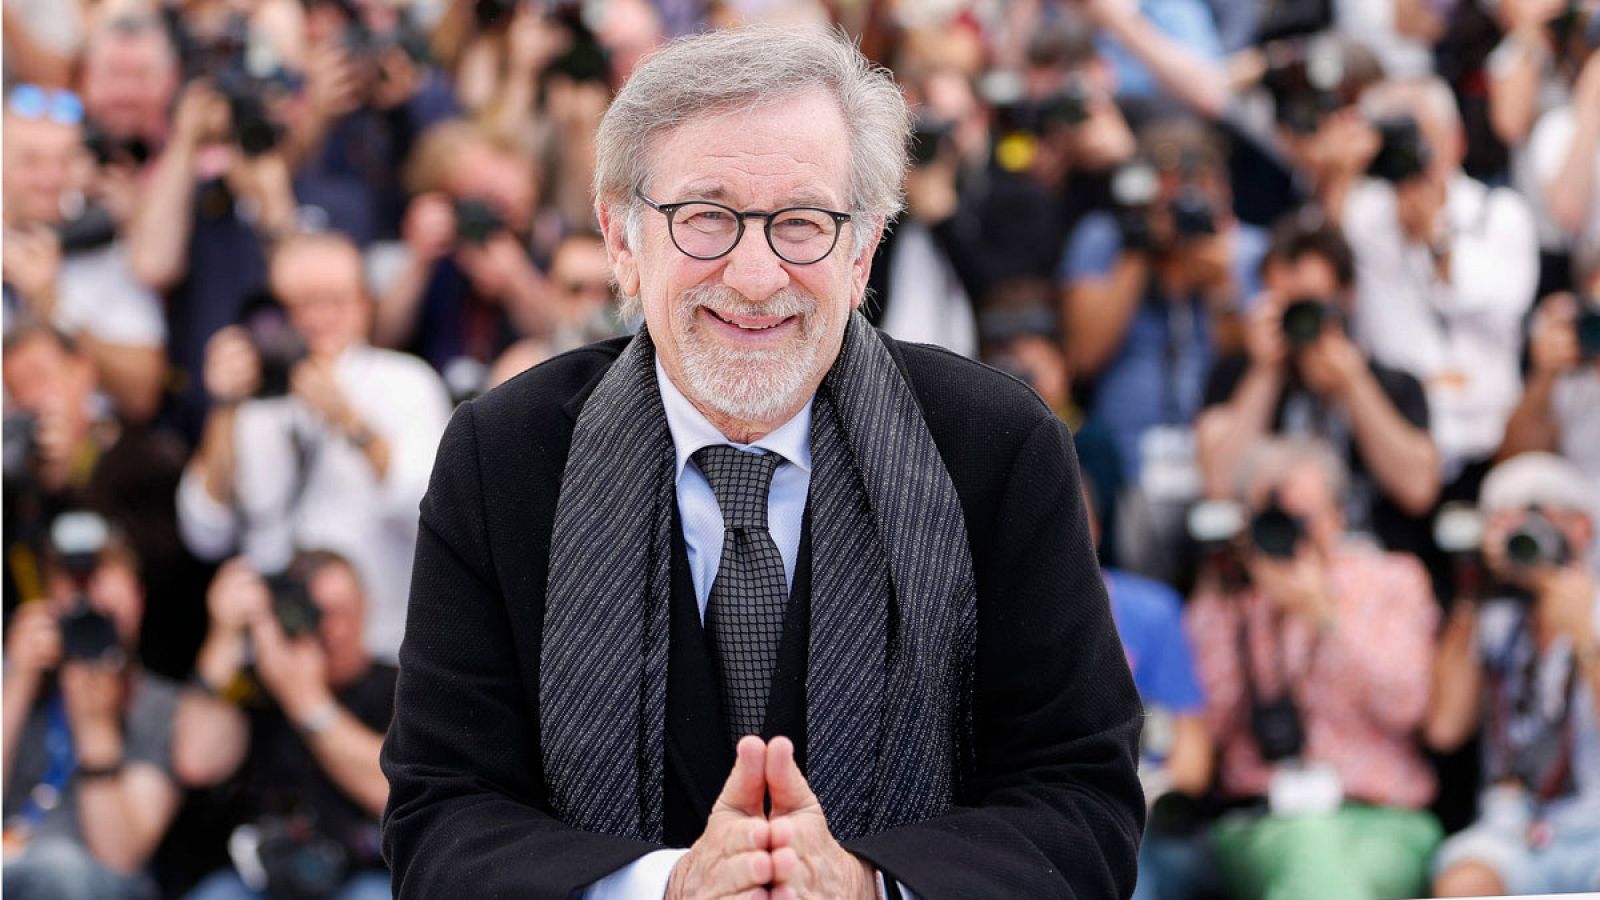 Foto de archivo tomada el 14 de mayo de 2016 del director de cine estadounidense Steven Spielberg mientras posa en el ámbito de la 69ª edición del Festival de Cine de Cannes (Francia).